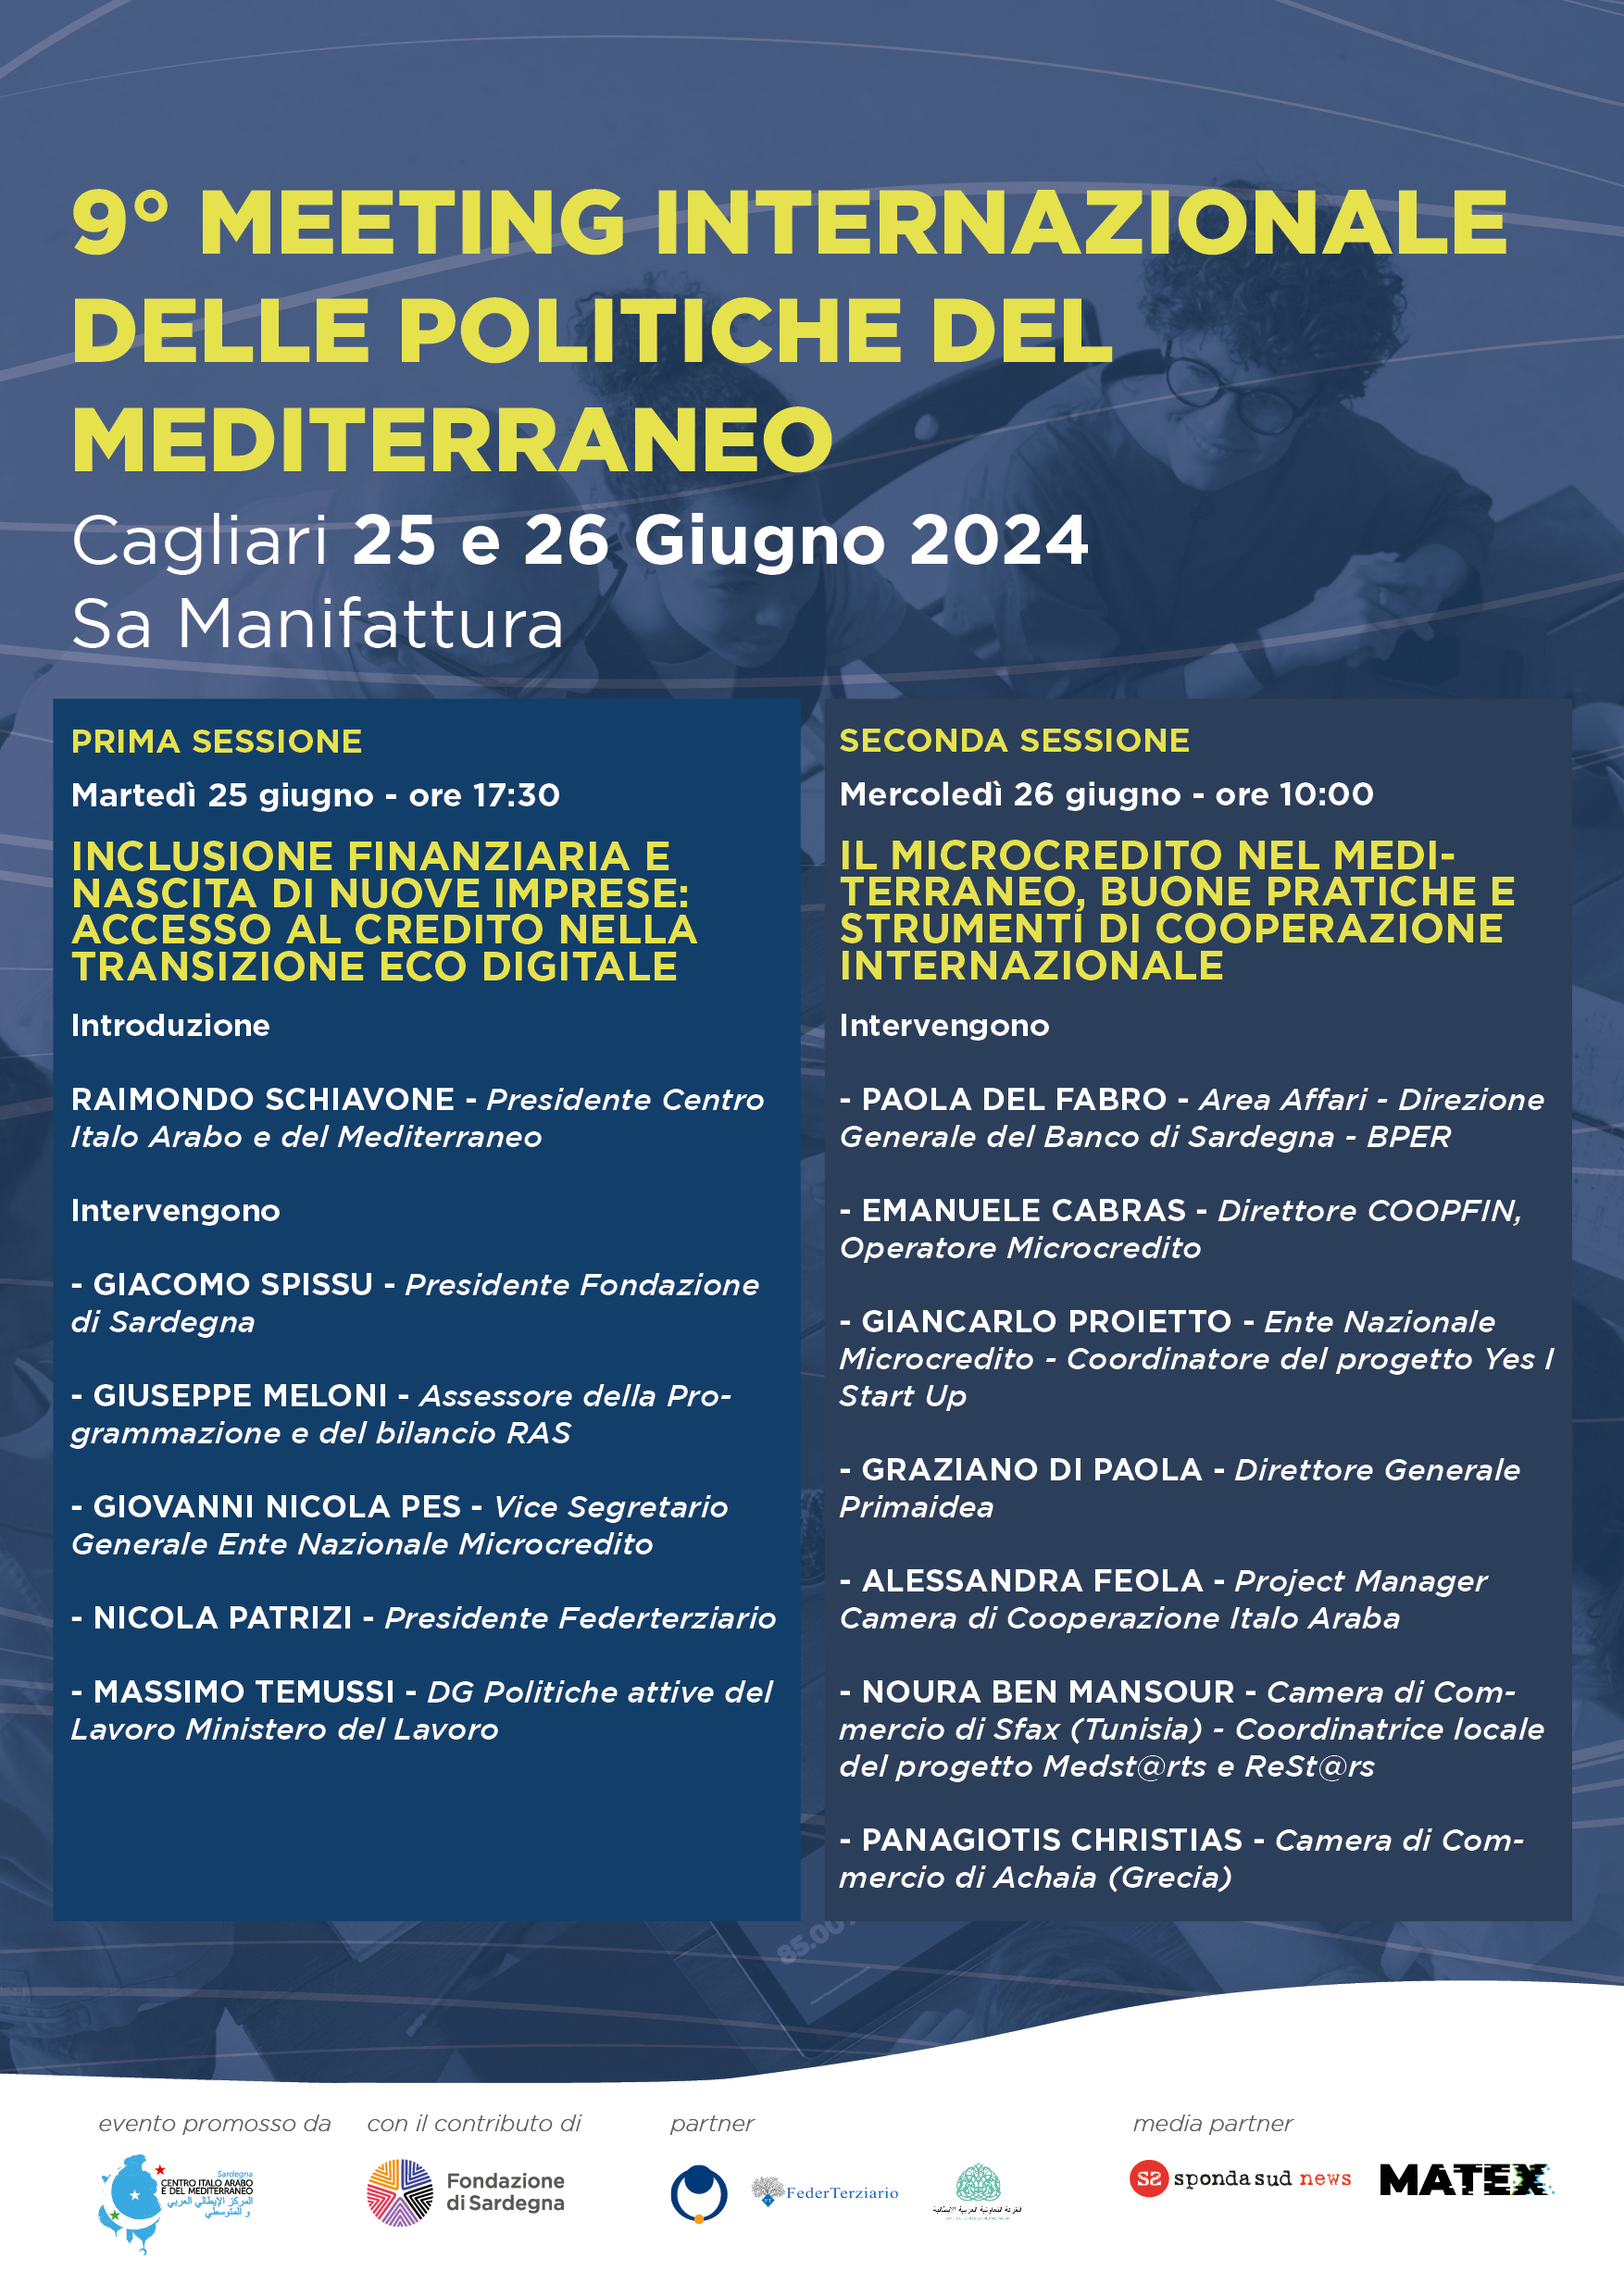 9° Meeting Internazionale delle Politiche del Mediterraneo 